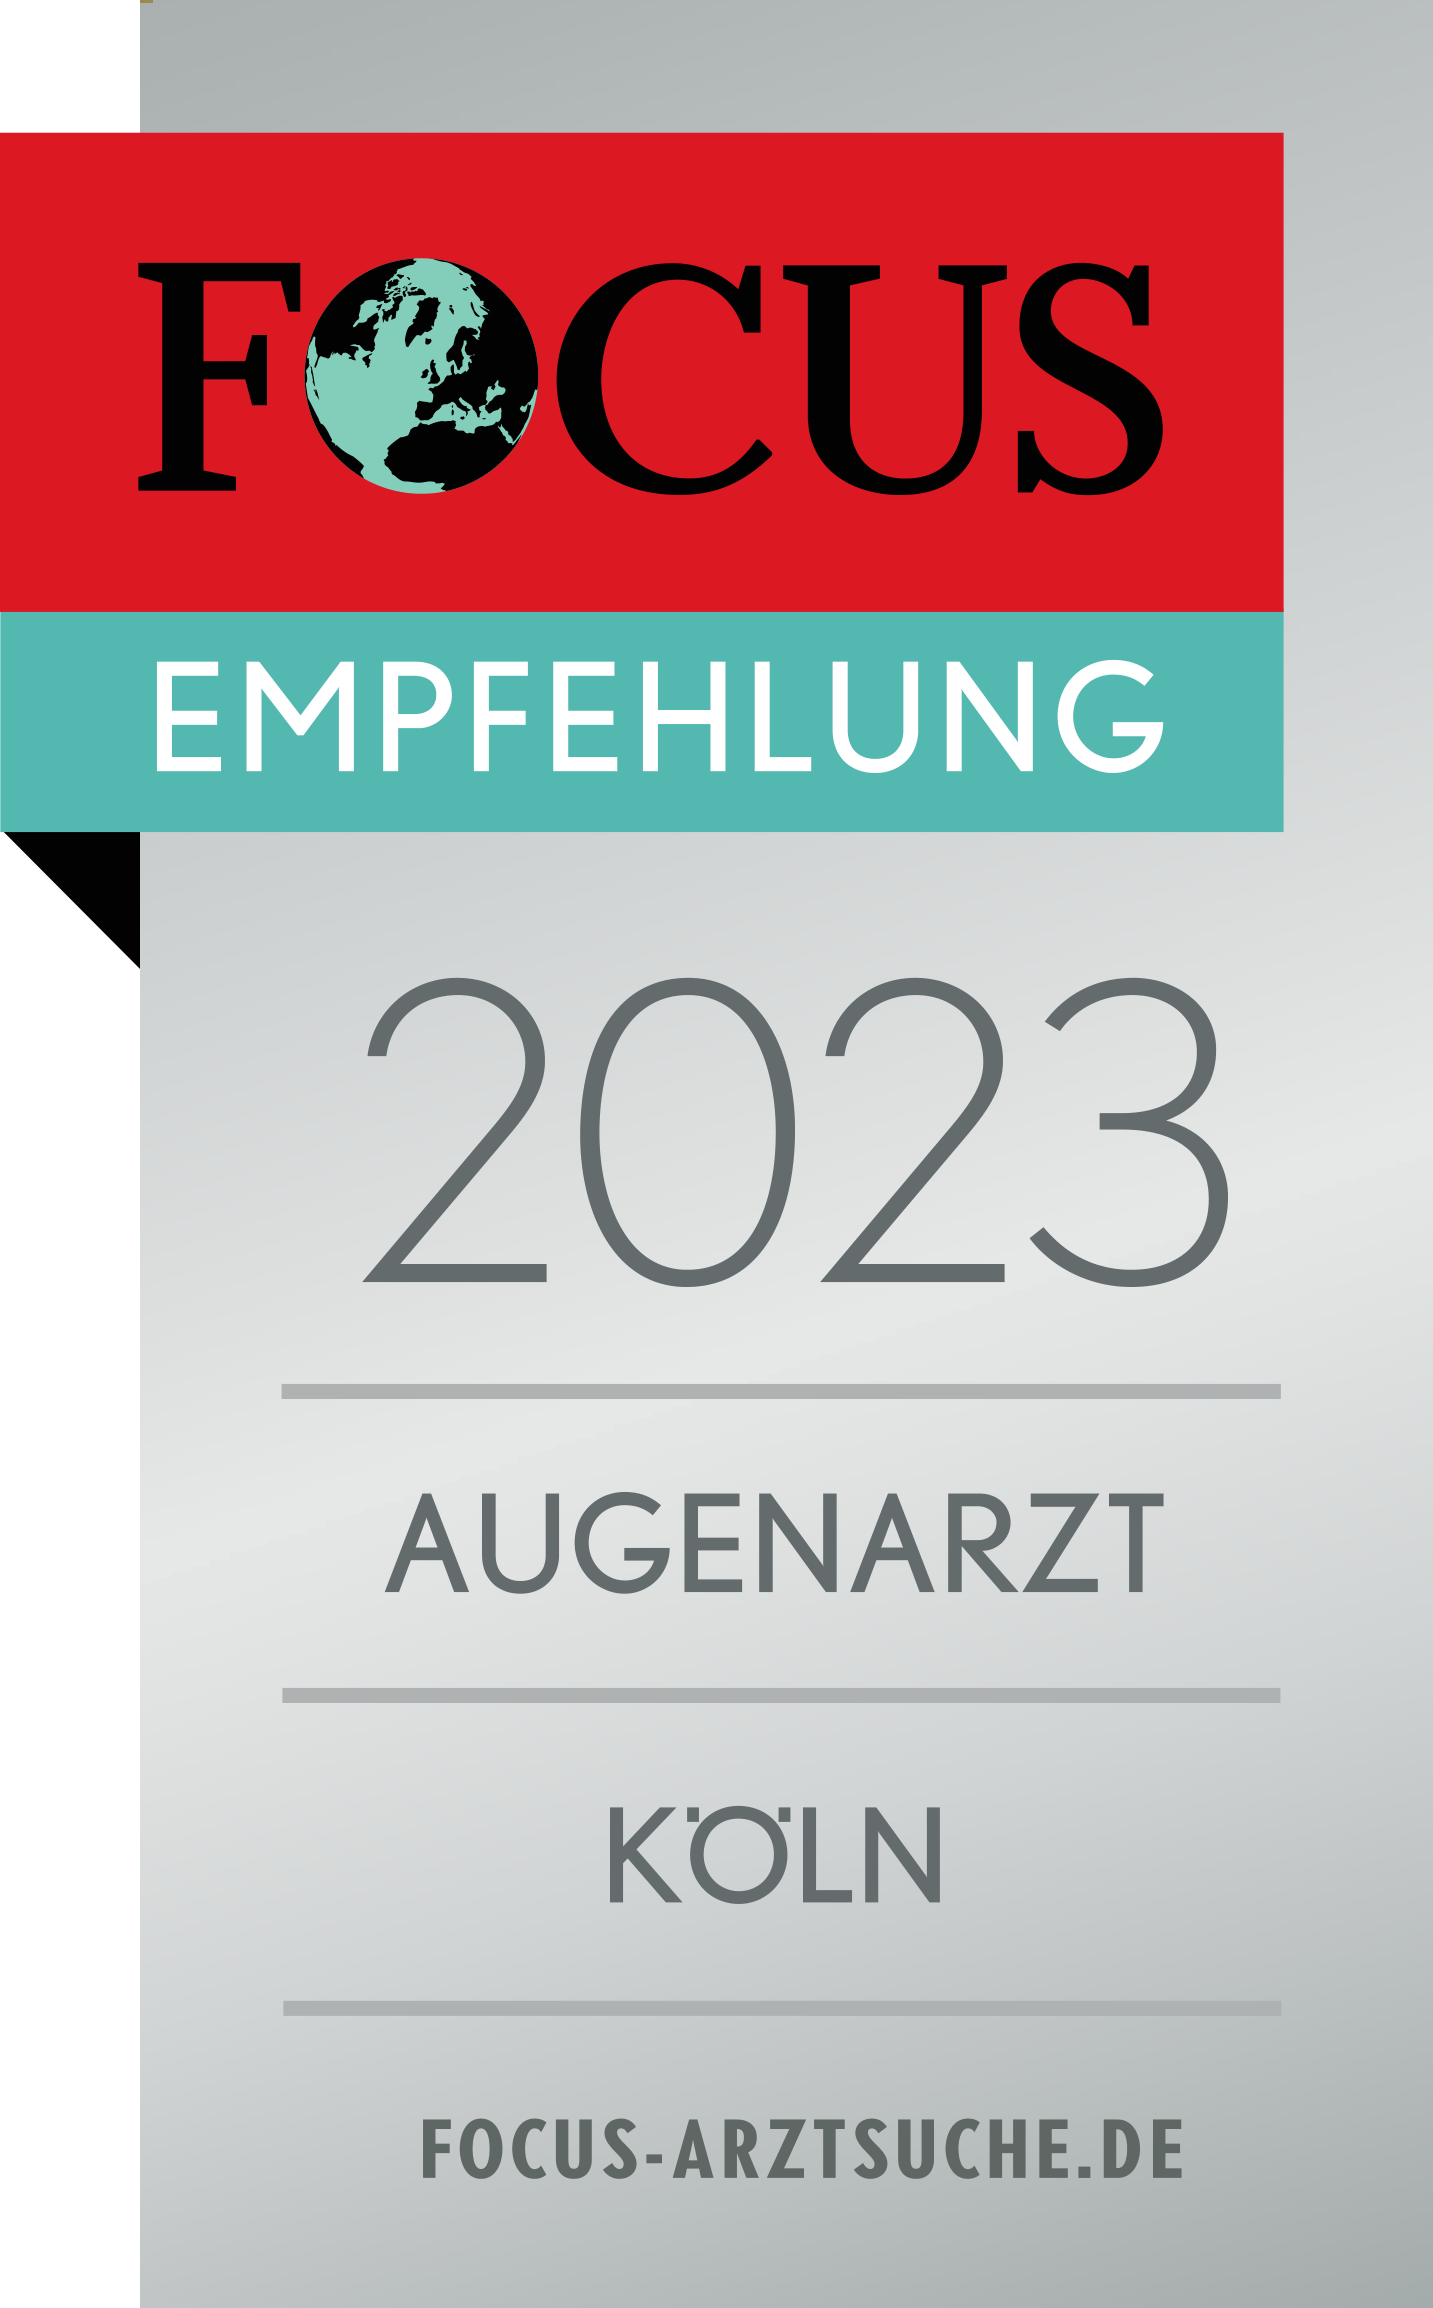 Auszeichnung Focus Empfehlung "2022 Augenarzt Köln"